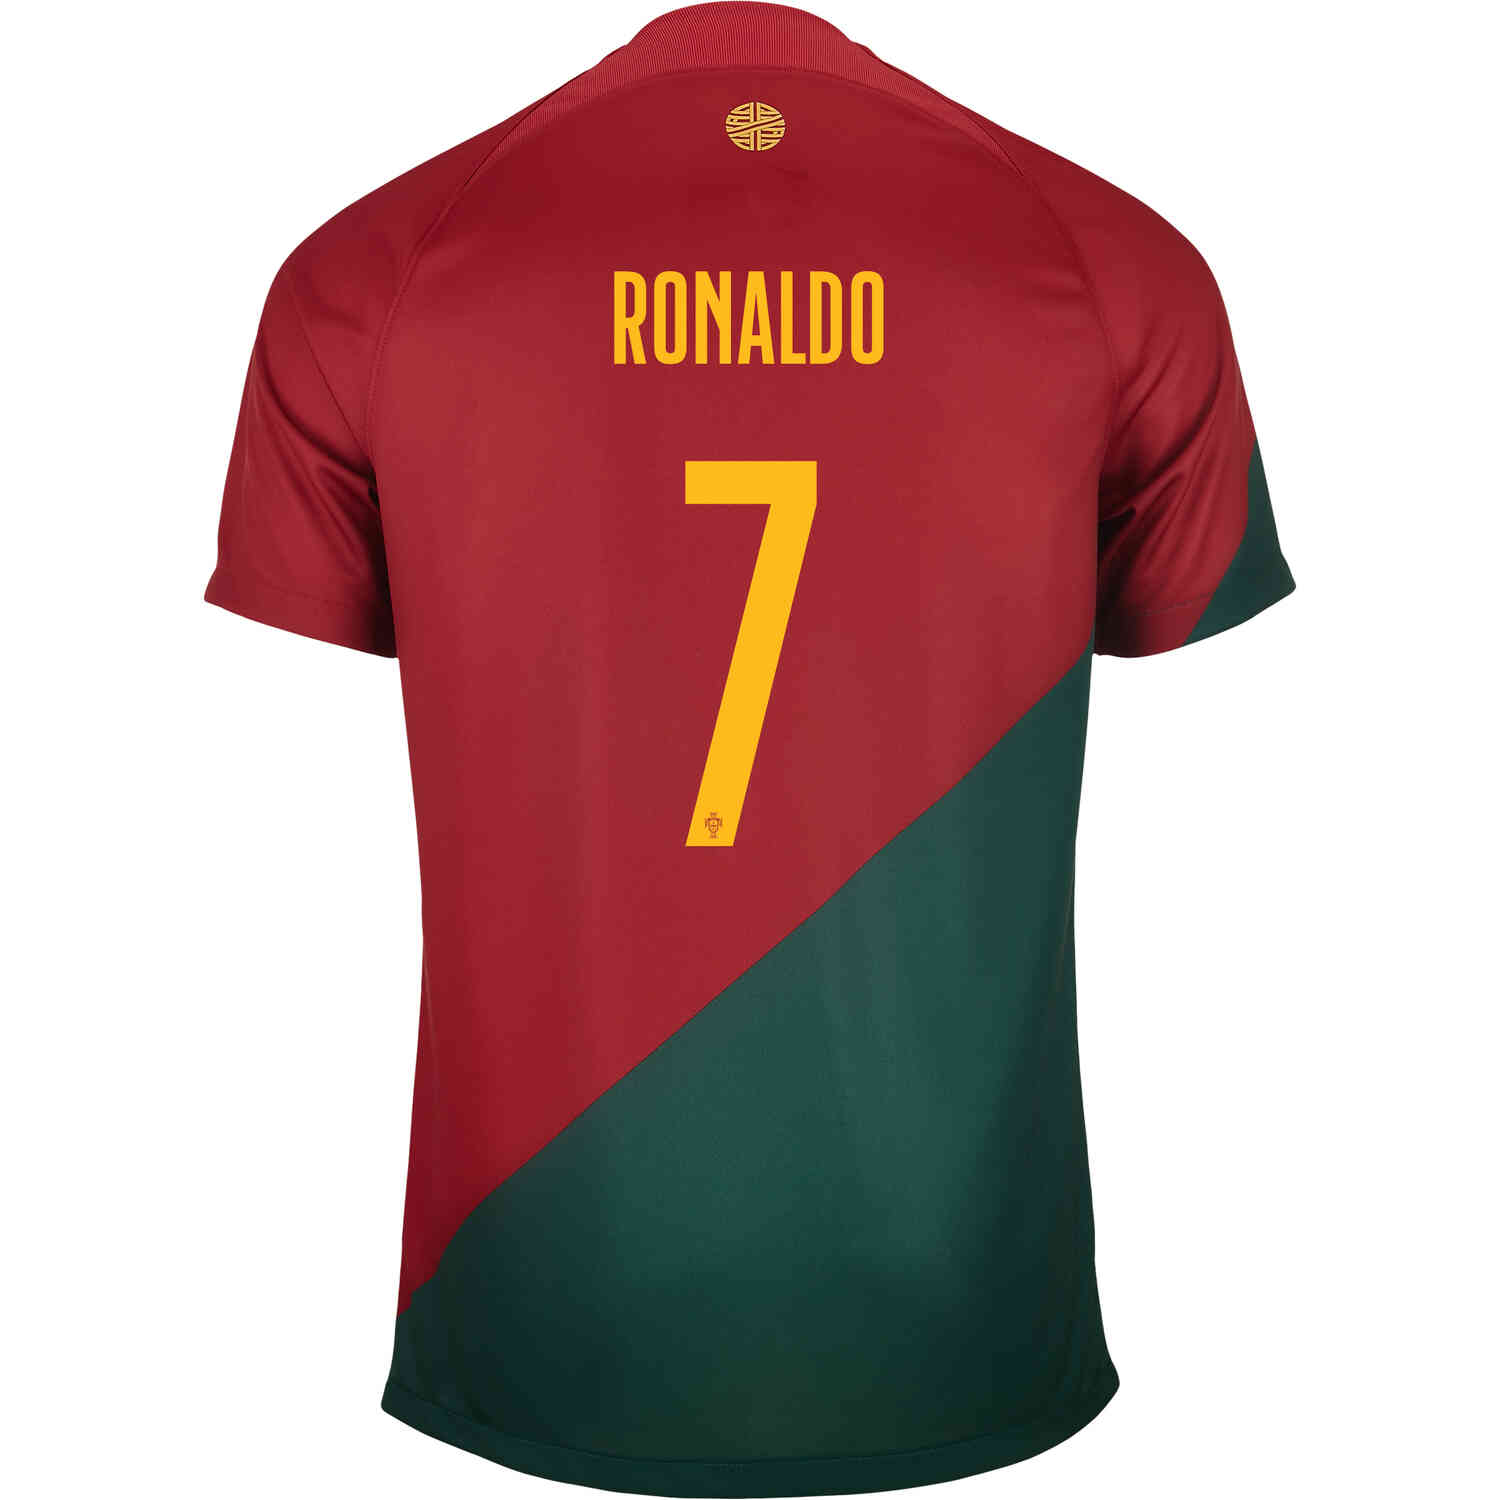 cristiano ronaldo new portugal jersey